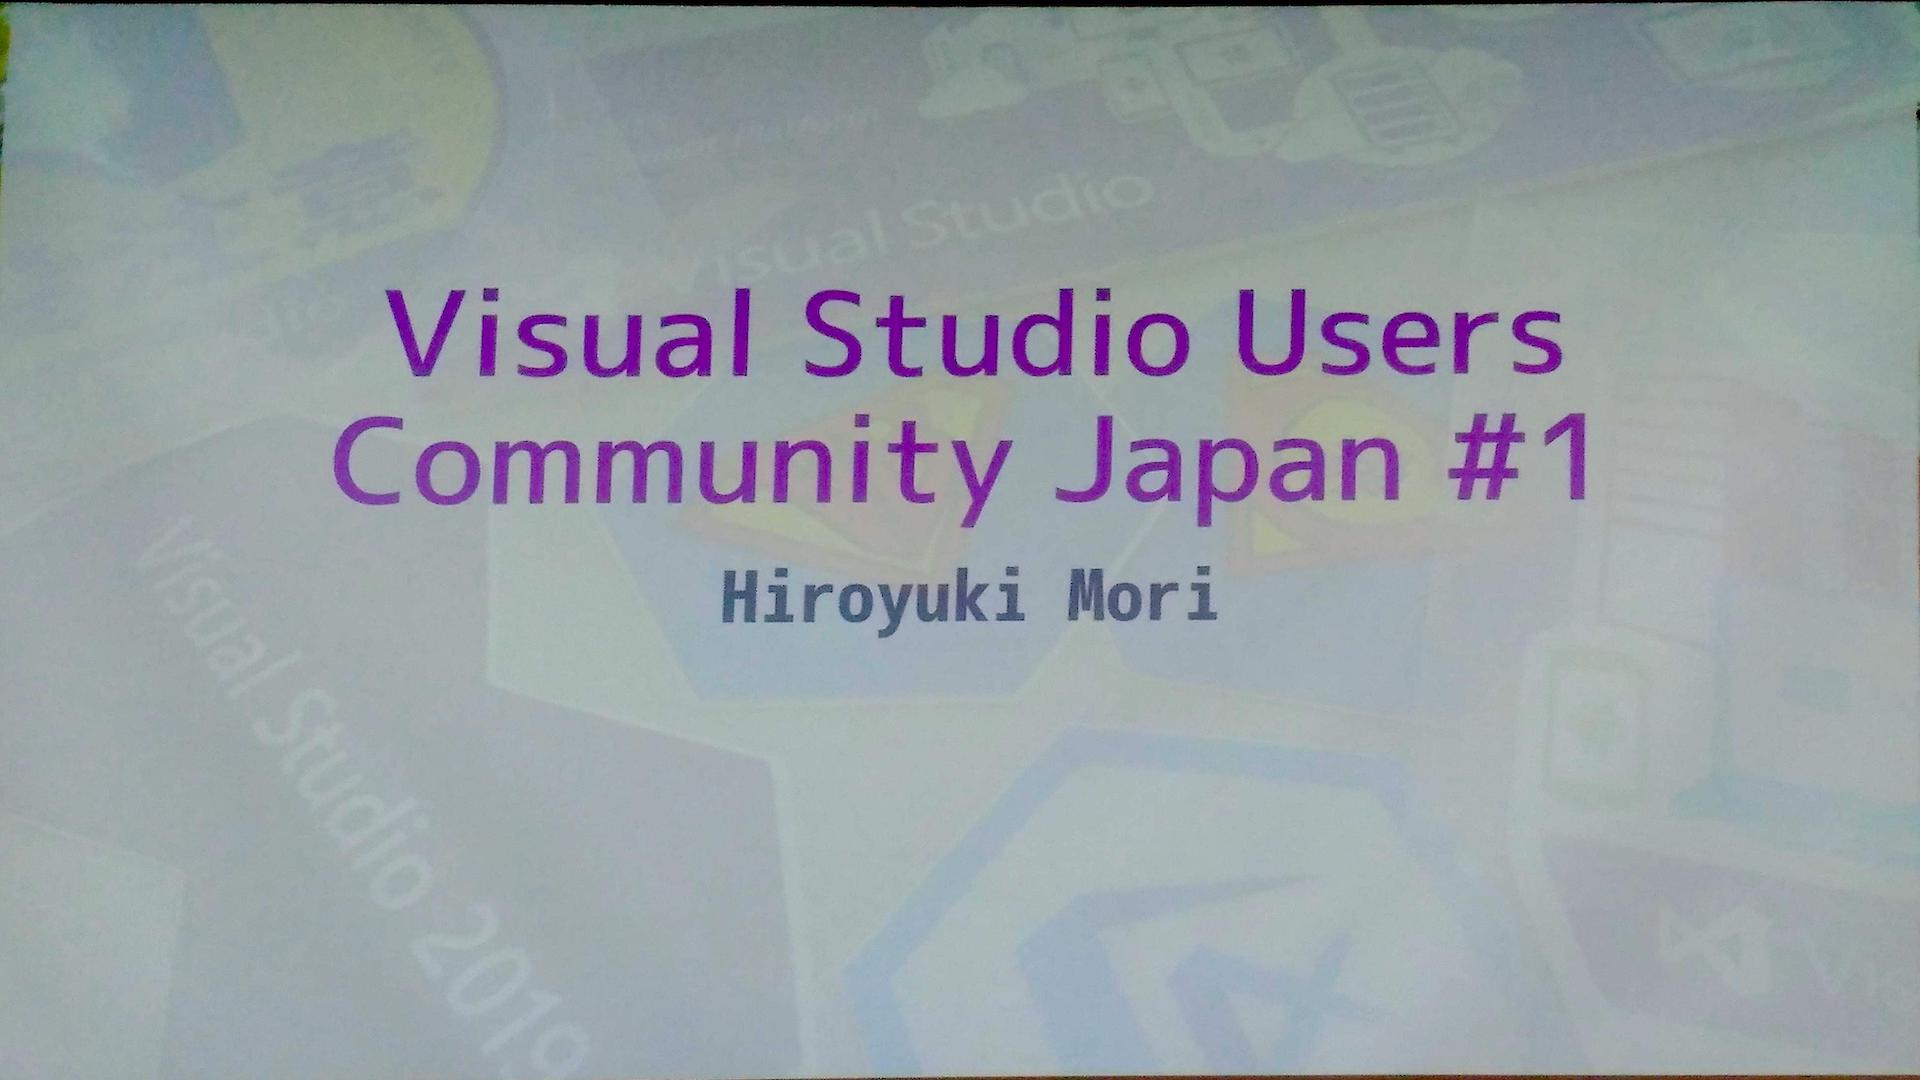 Visual Studio Users Community Japan #1 に参加してきました! #vsucjp